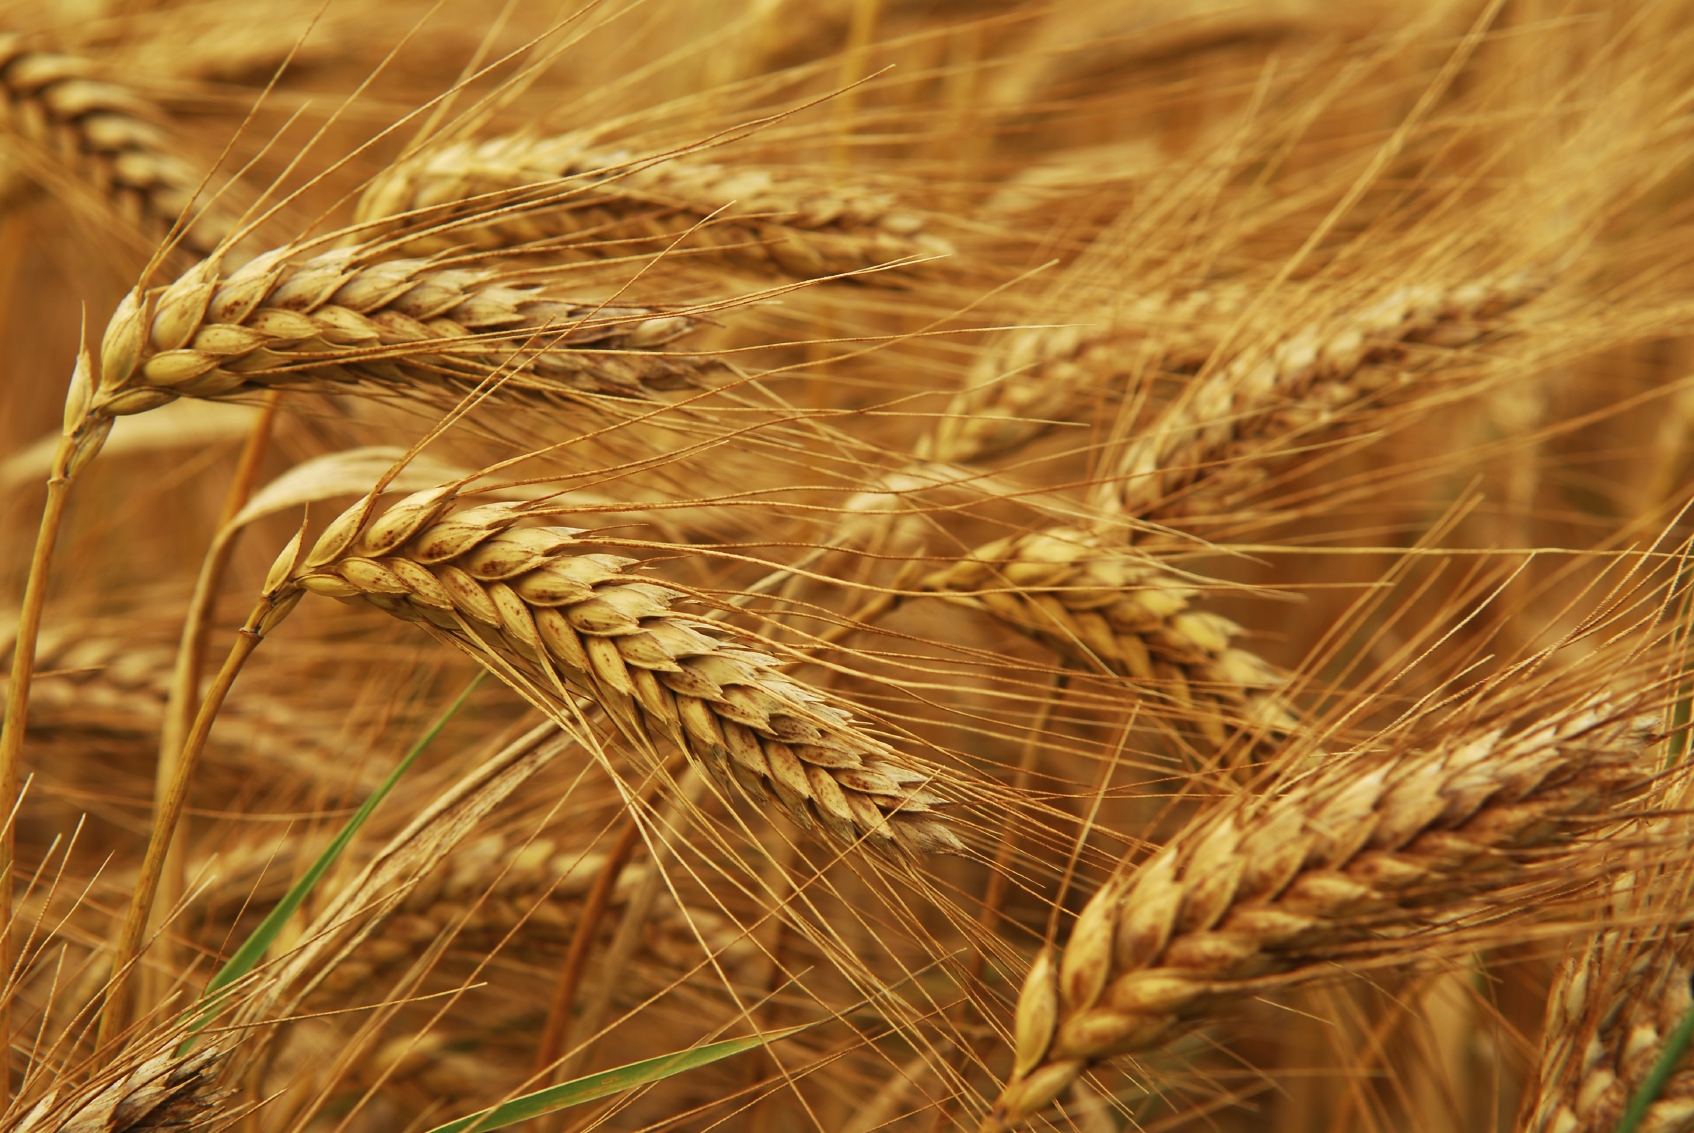 Golden wheat growing in a farm field, closeup on ears